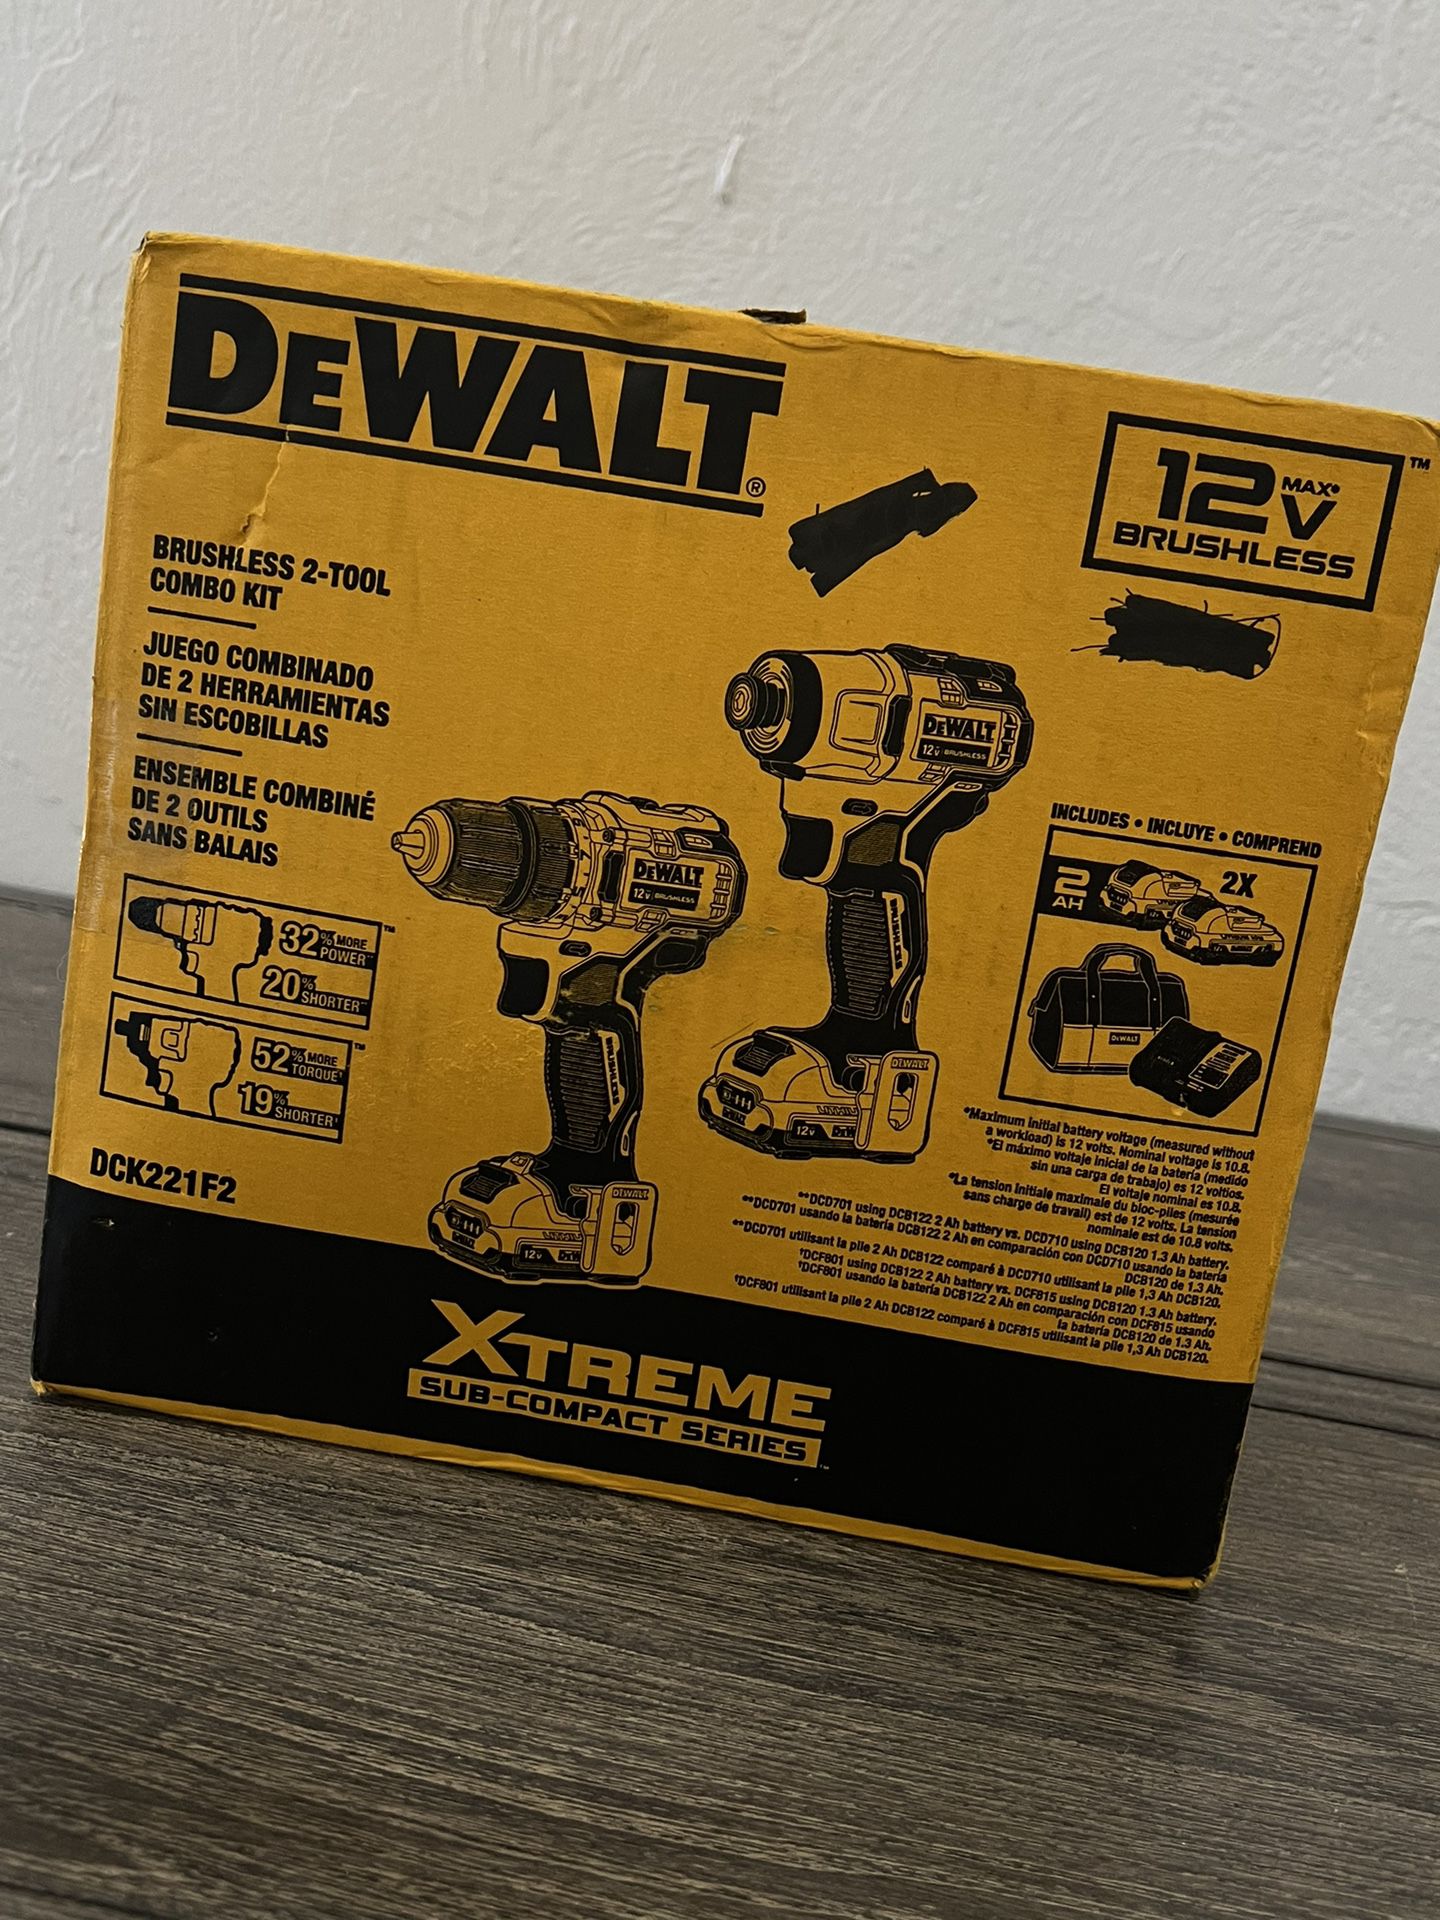 12-volt DEWALT drills